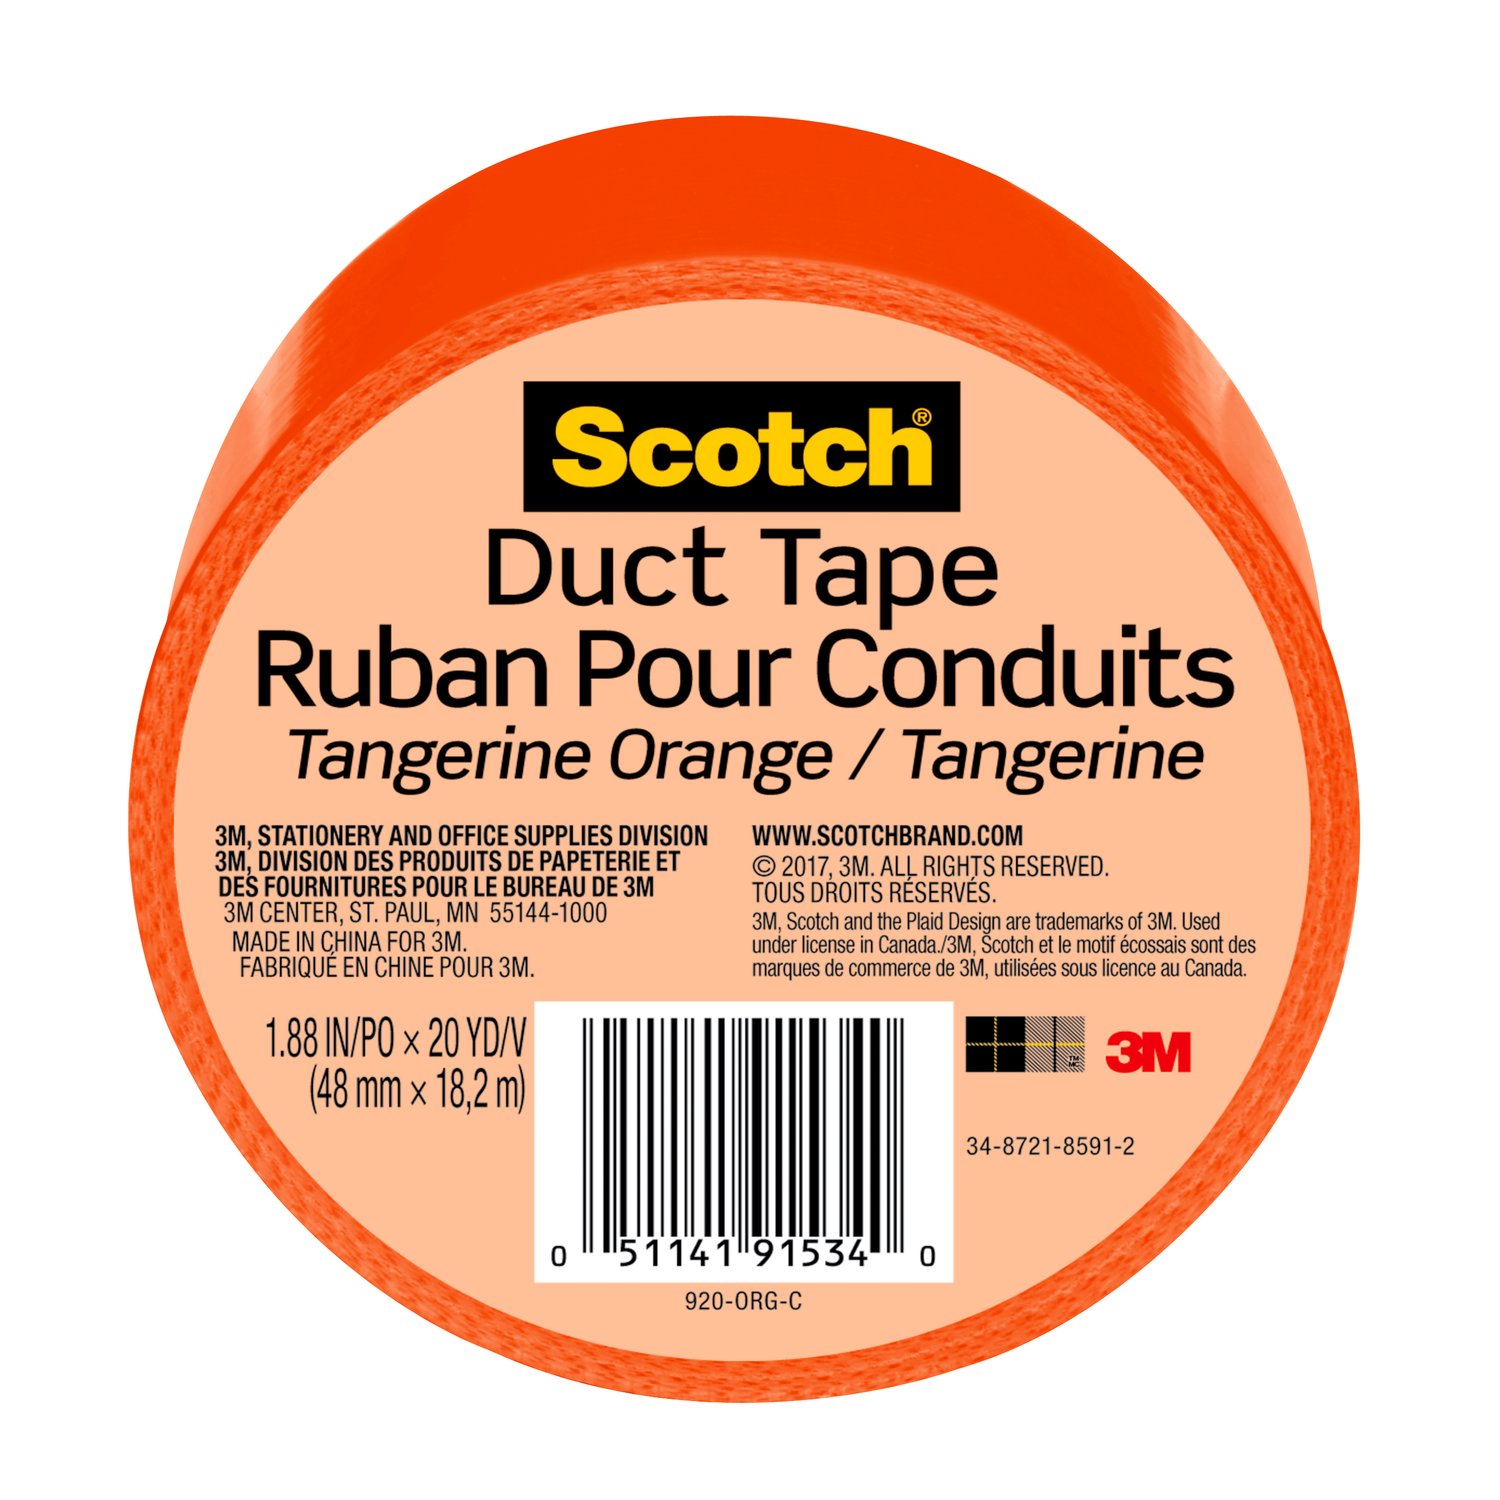 7100166642 - Scotch Duct Tape 920-ORG-C, 1.88 in x 20 yd (48 mm x 18,2 m), Orange